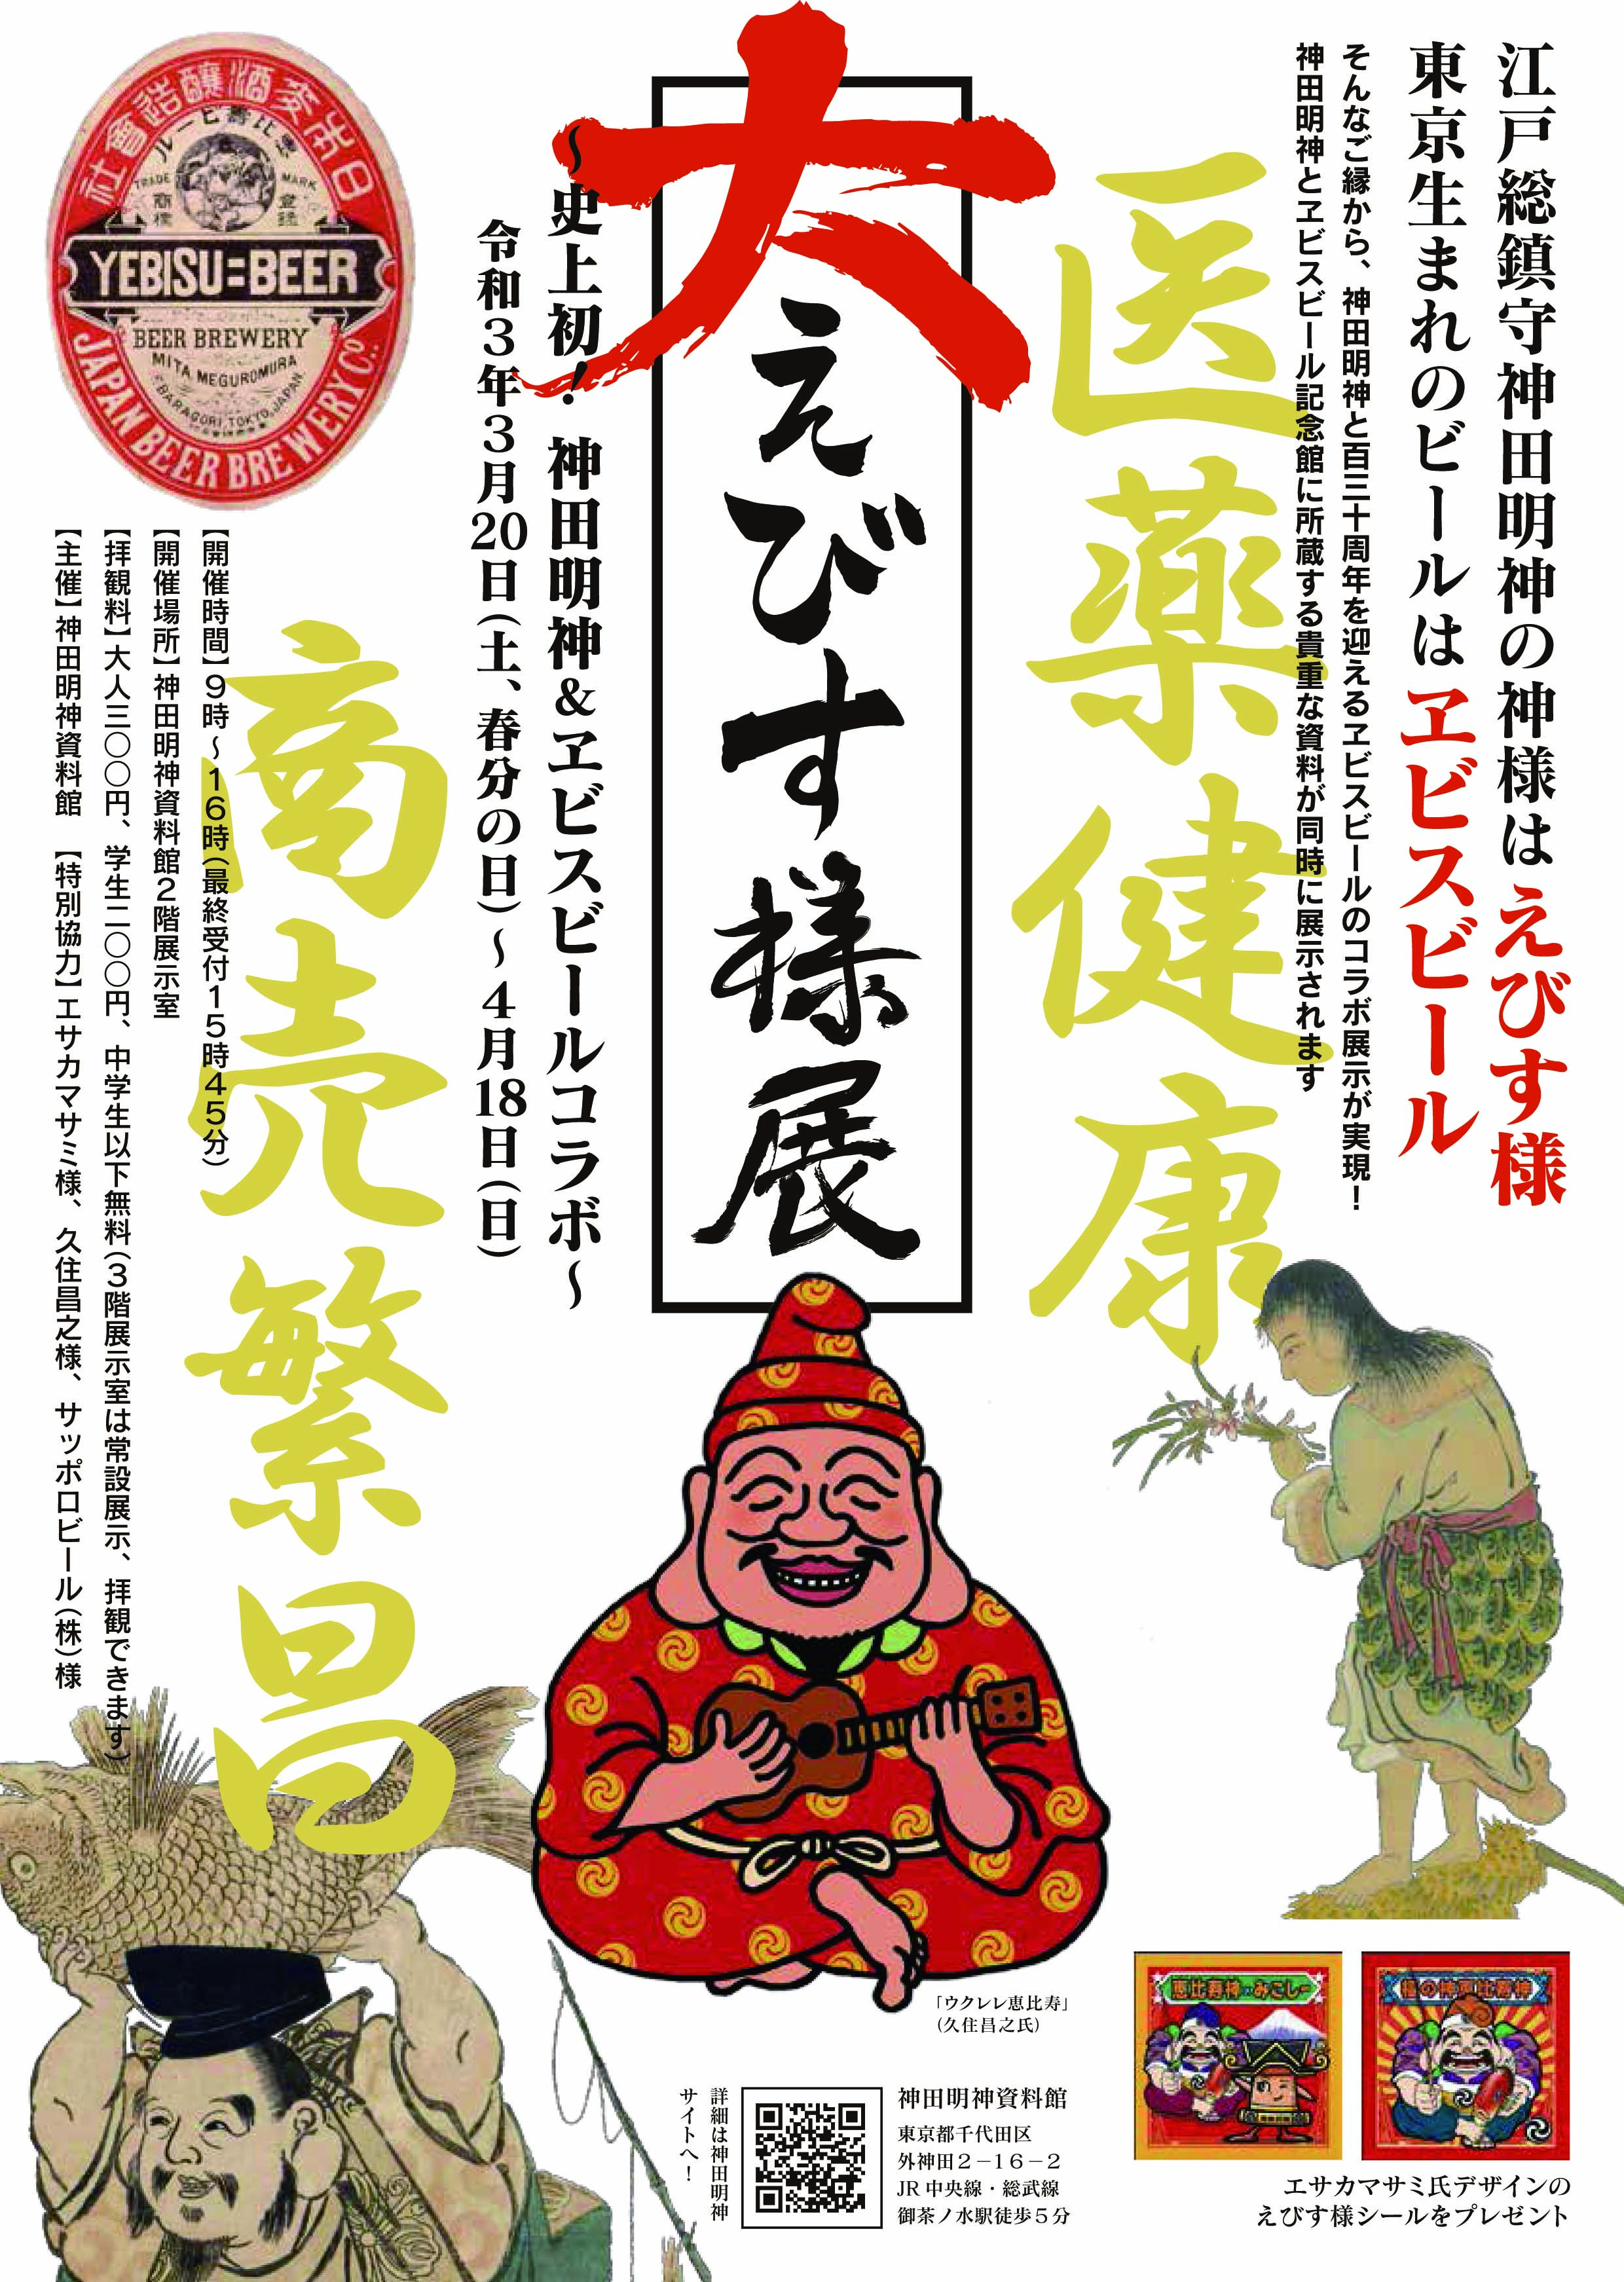 大えびす様展 神田明神とヱビスビールのコラボ 宗教法人 神田神社のプレスリリース